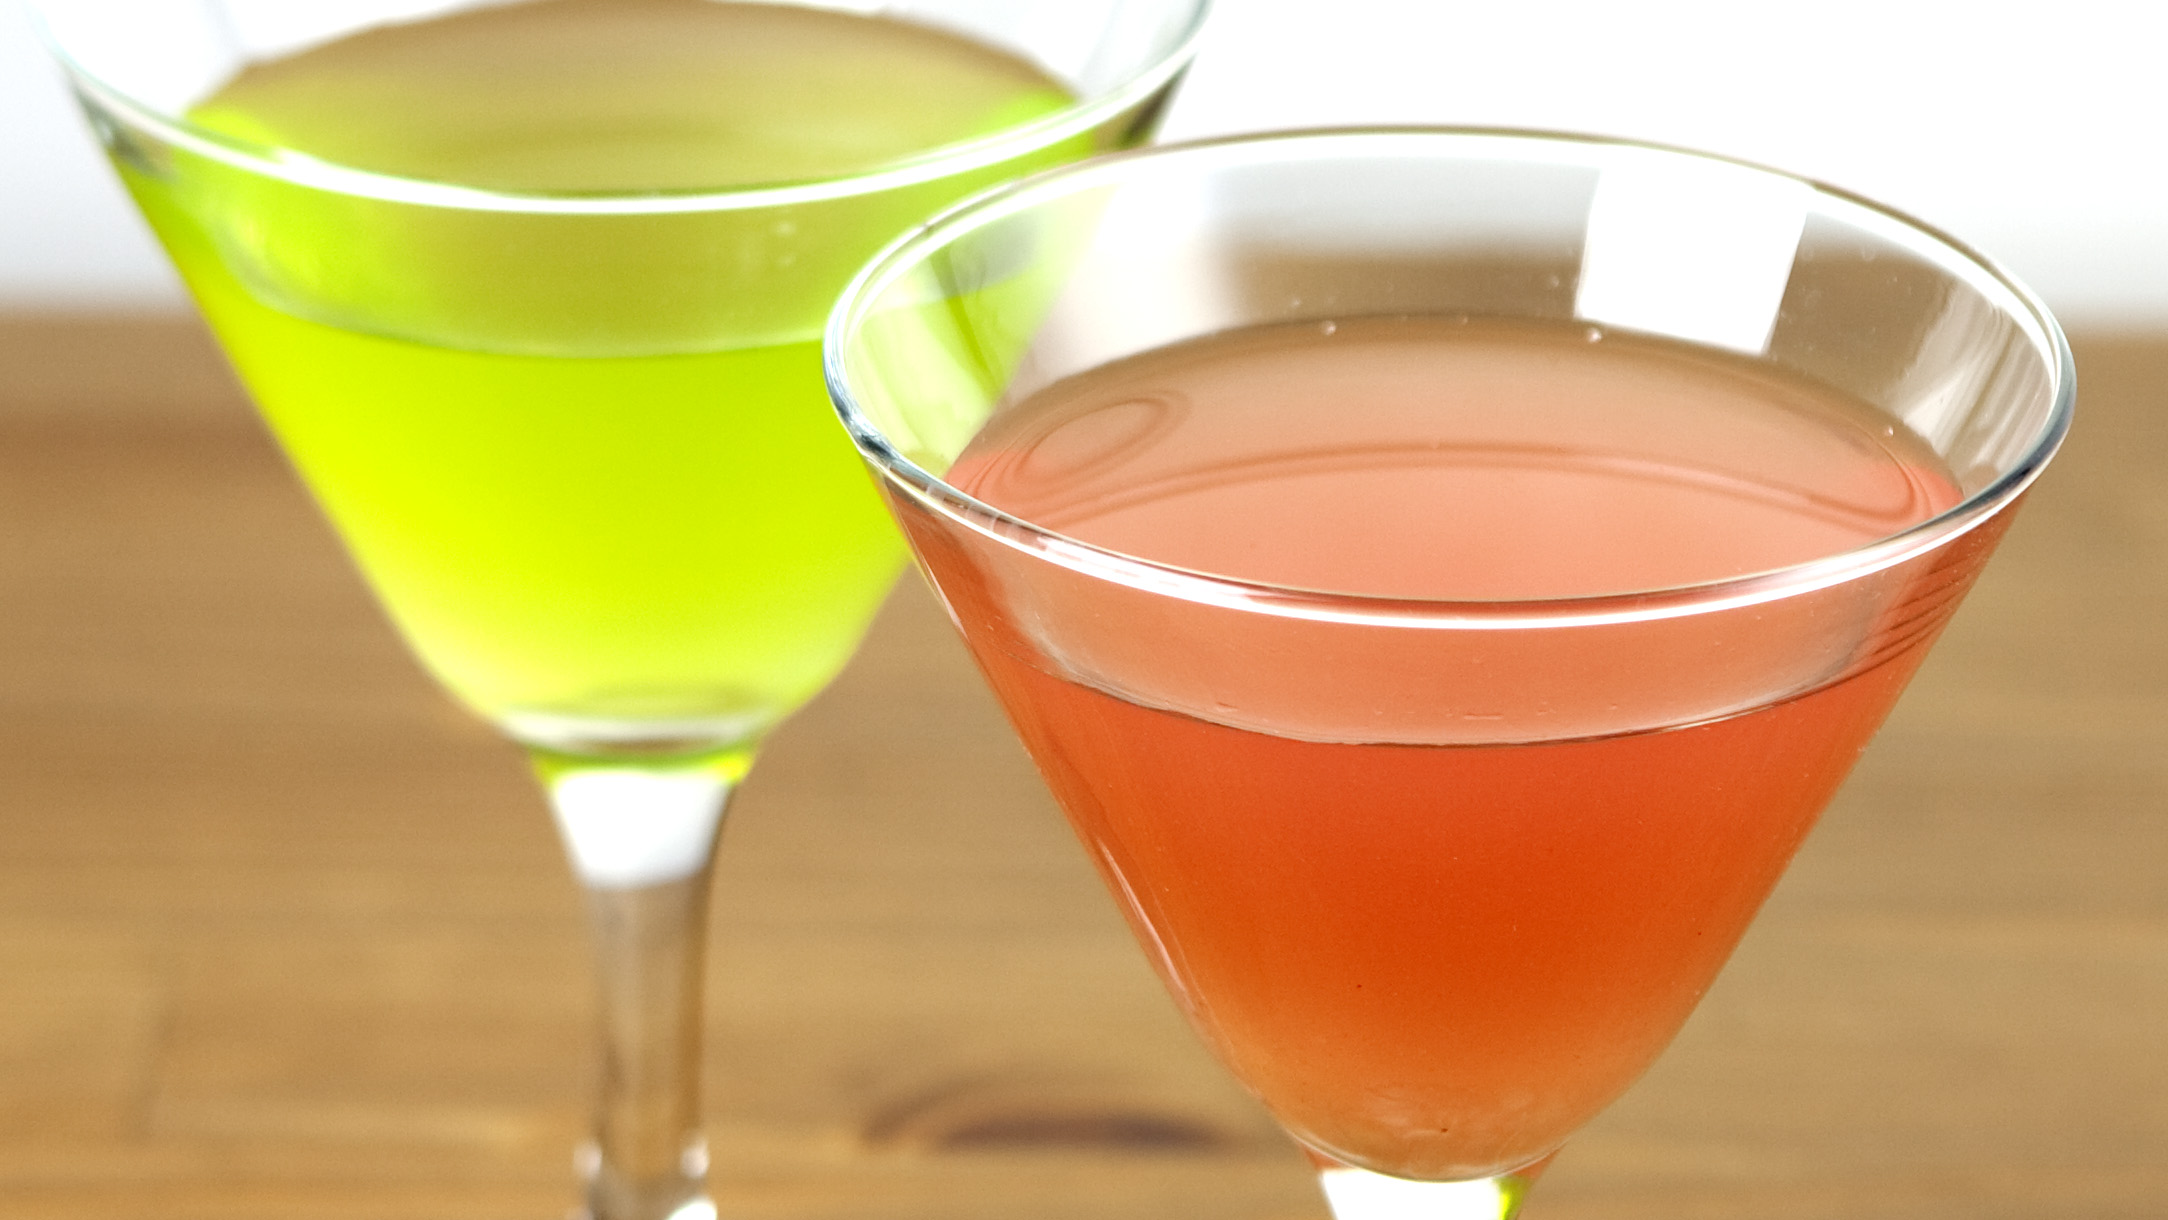 sumida cocktail base: Sake Martini